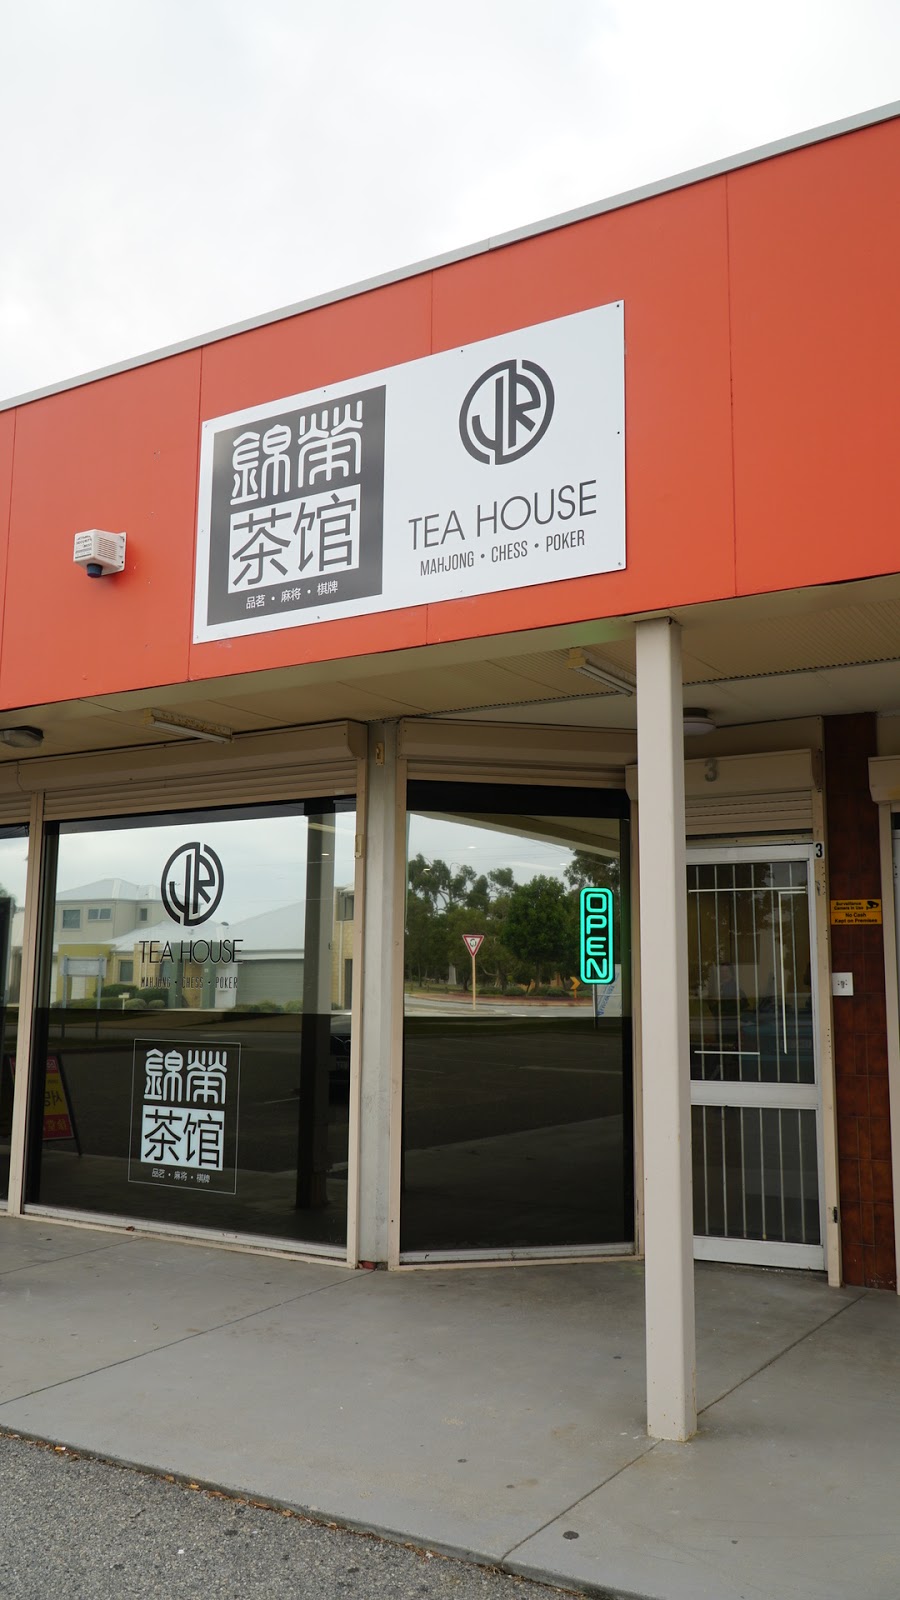 锦荣茶馆 JR Tea House | u3/560 Metcalfe Rd, Ferndale WA 6148, Australia | Phone: (08) 6143 7254